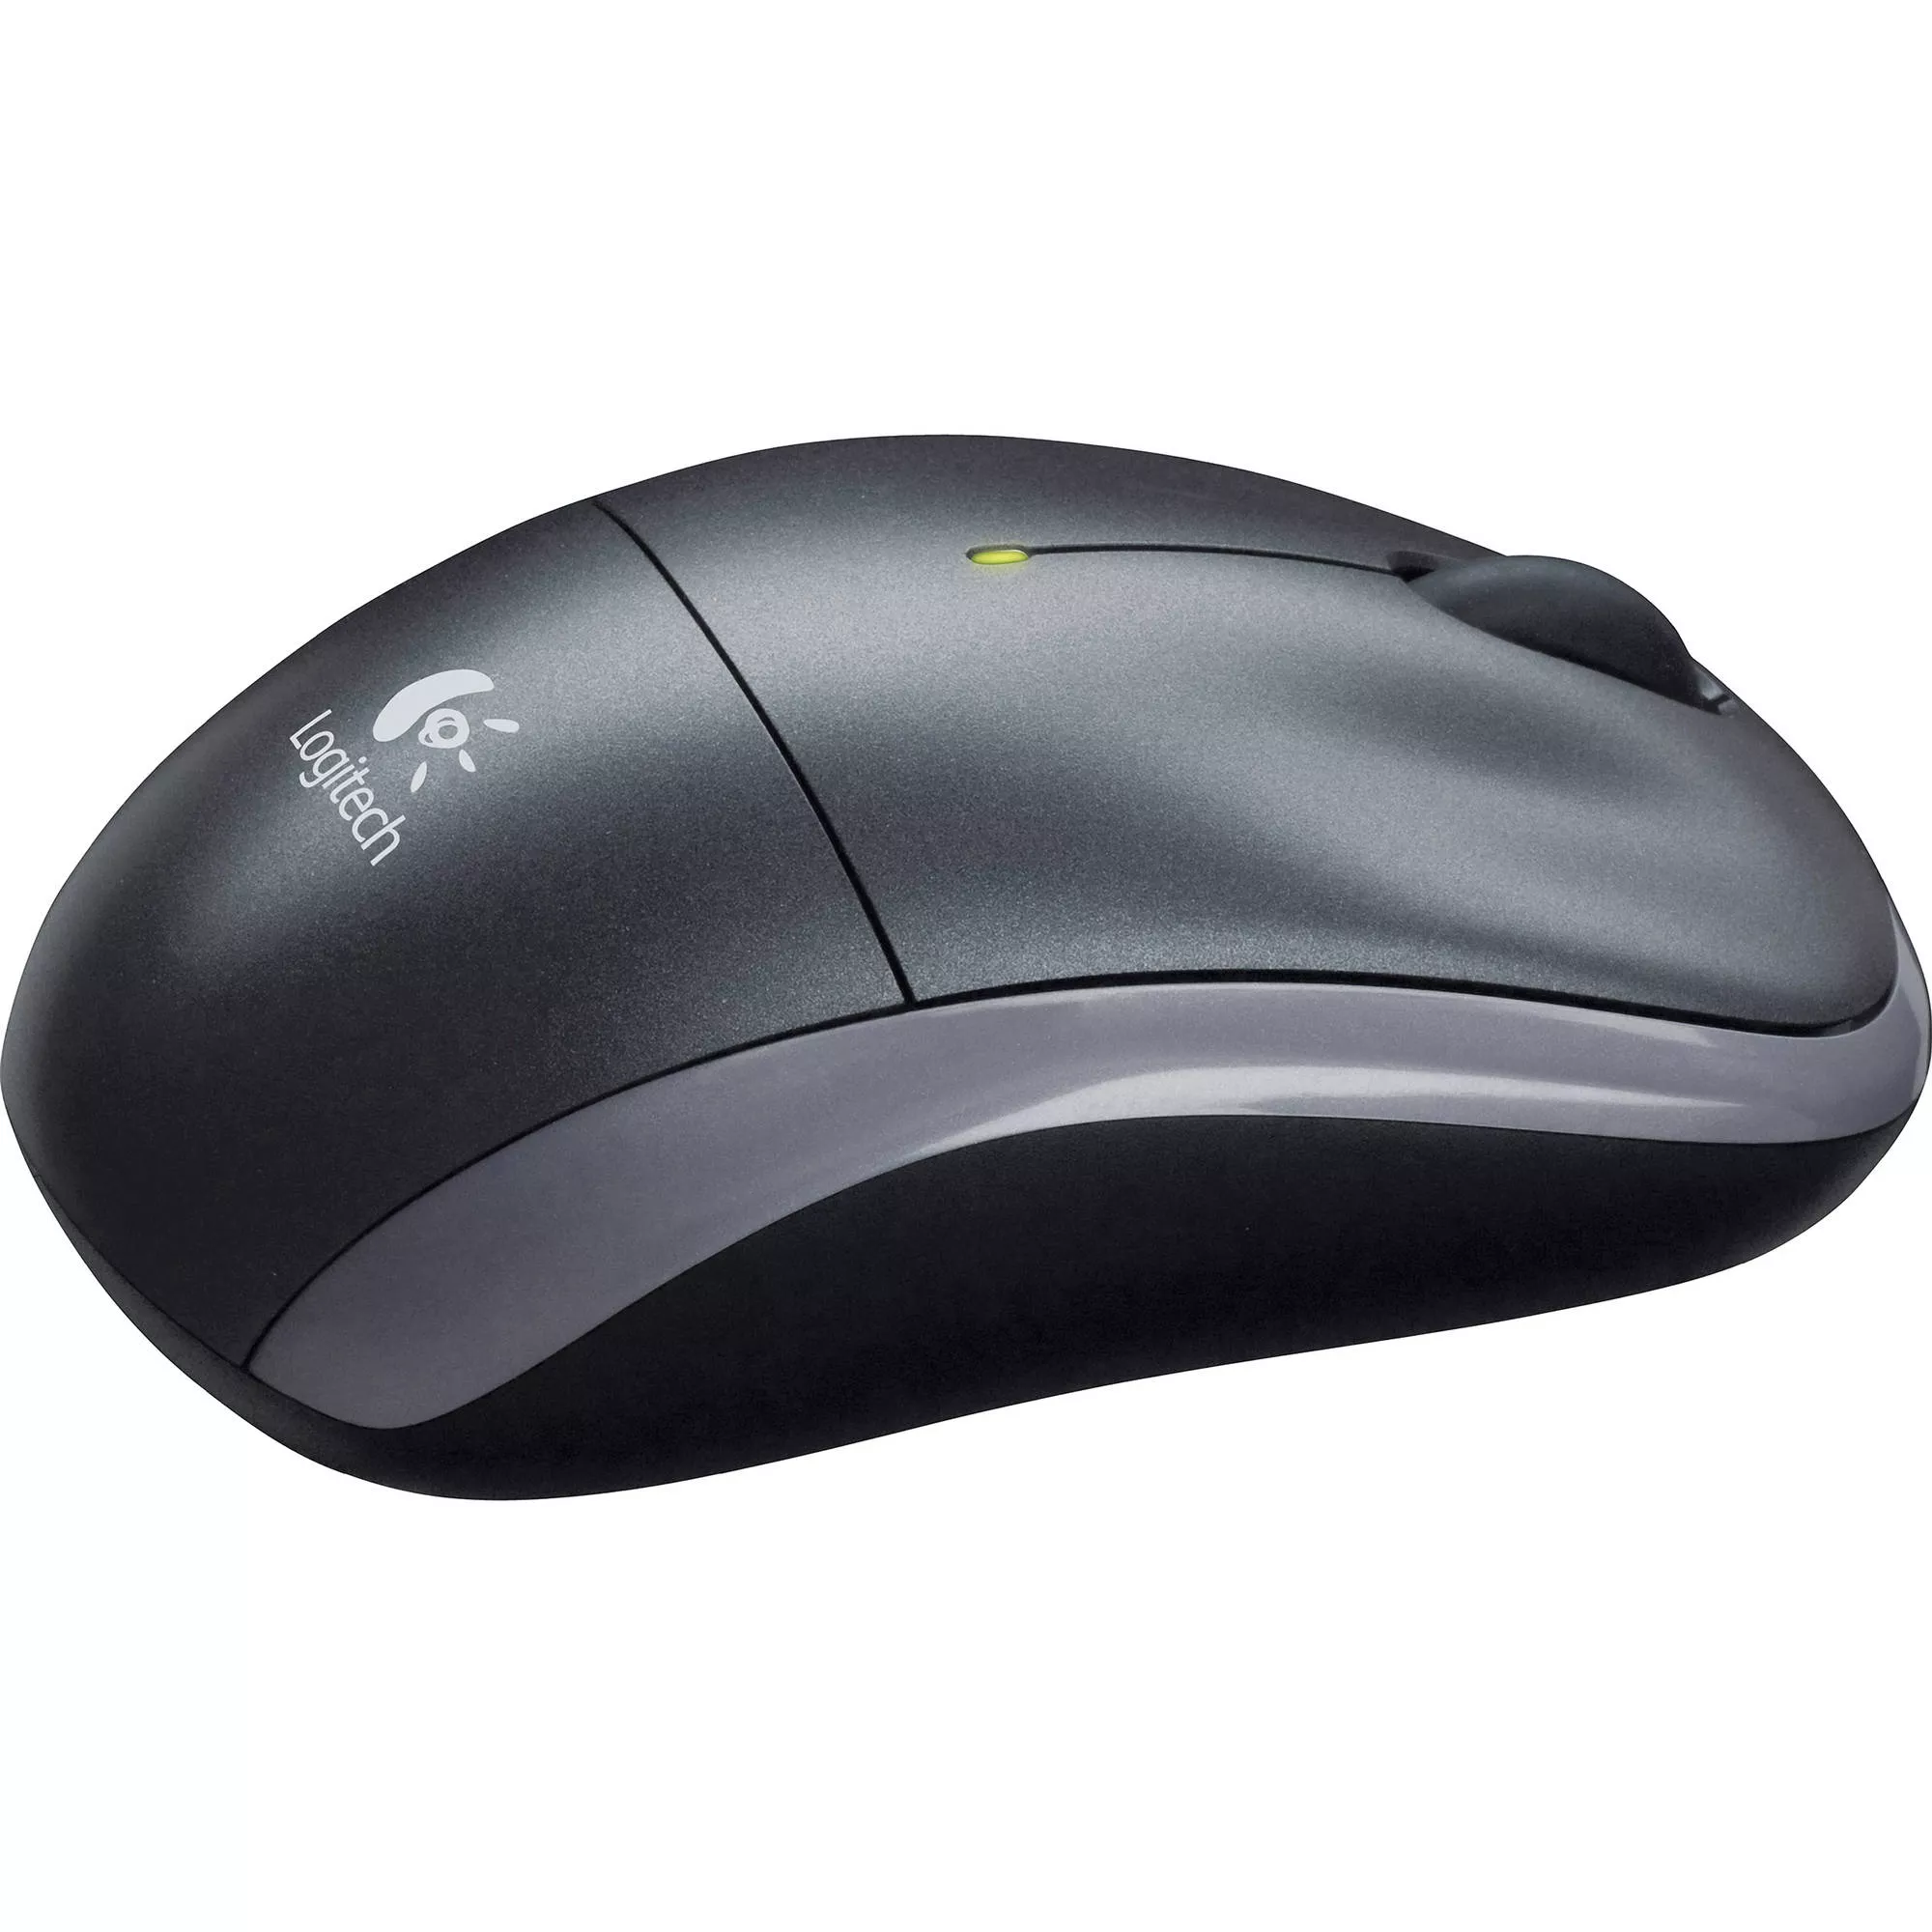 økse Ny ankomst efter det Logitech M215 Wireless Mouse (Dark Silver)